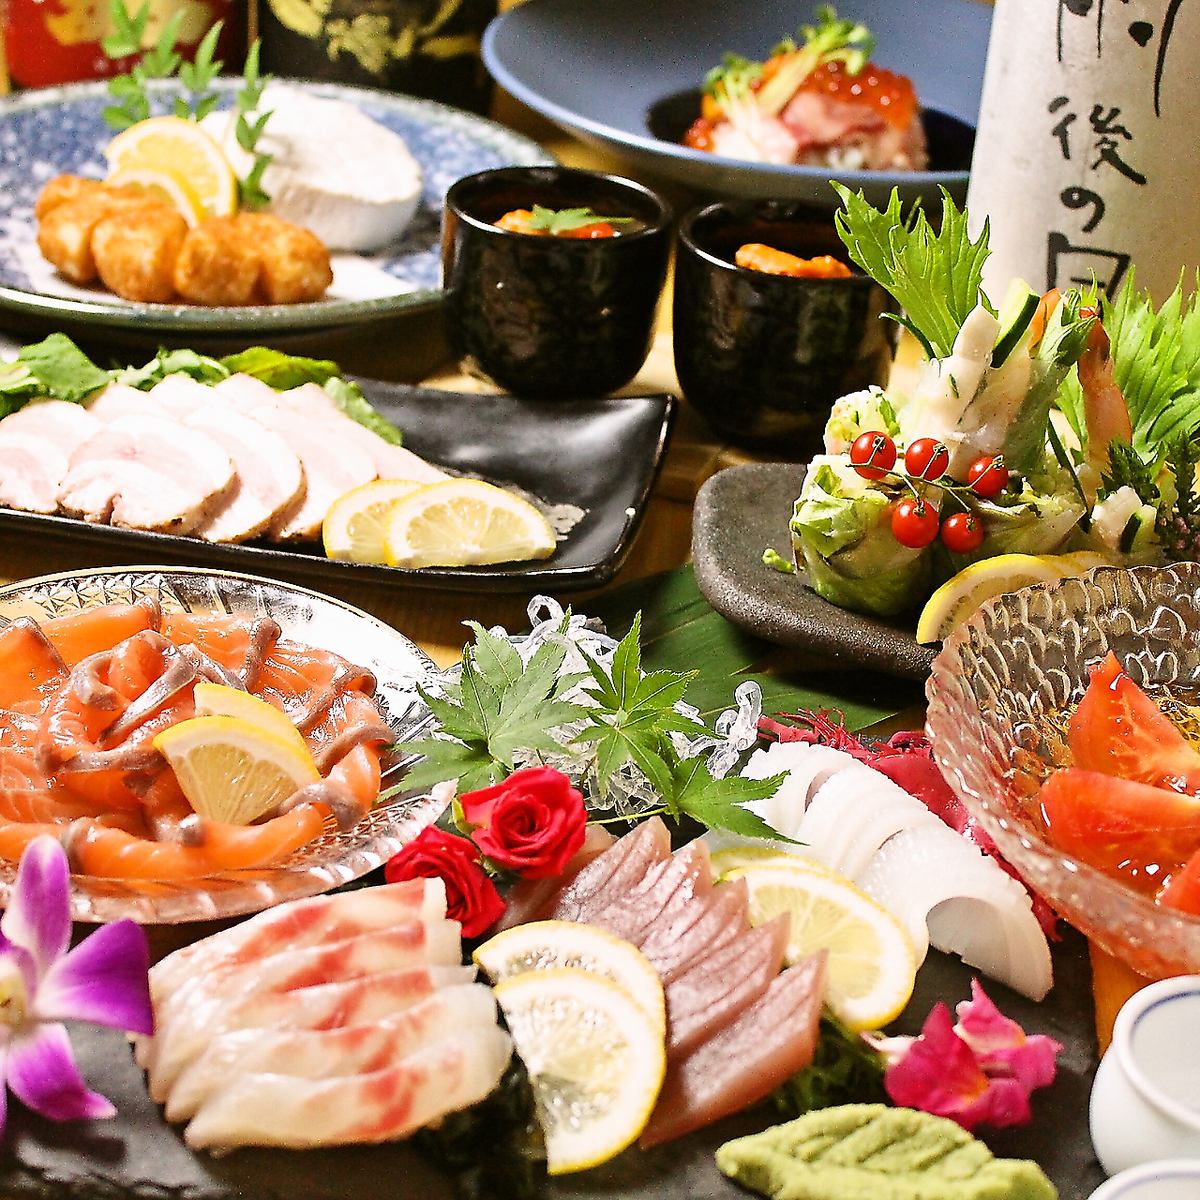 在轻松的日式空间中享用从北海道到冲绳精心挑选的食材以及以当地酒为主的各种清酒。